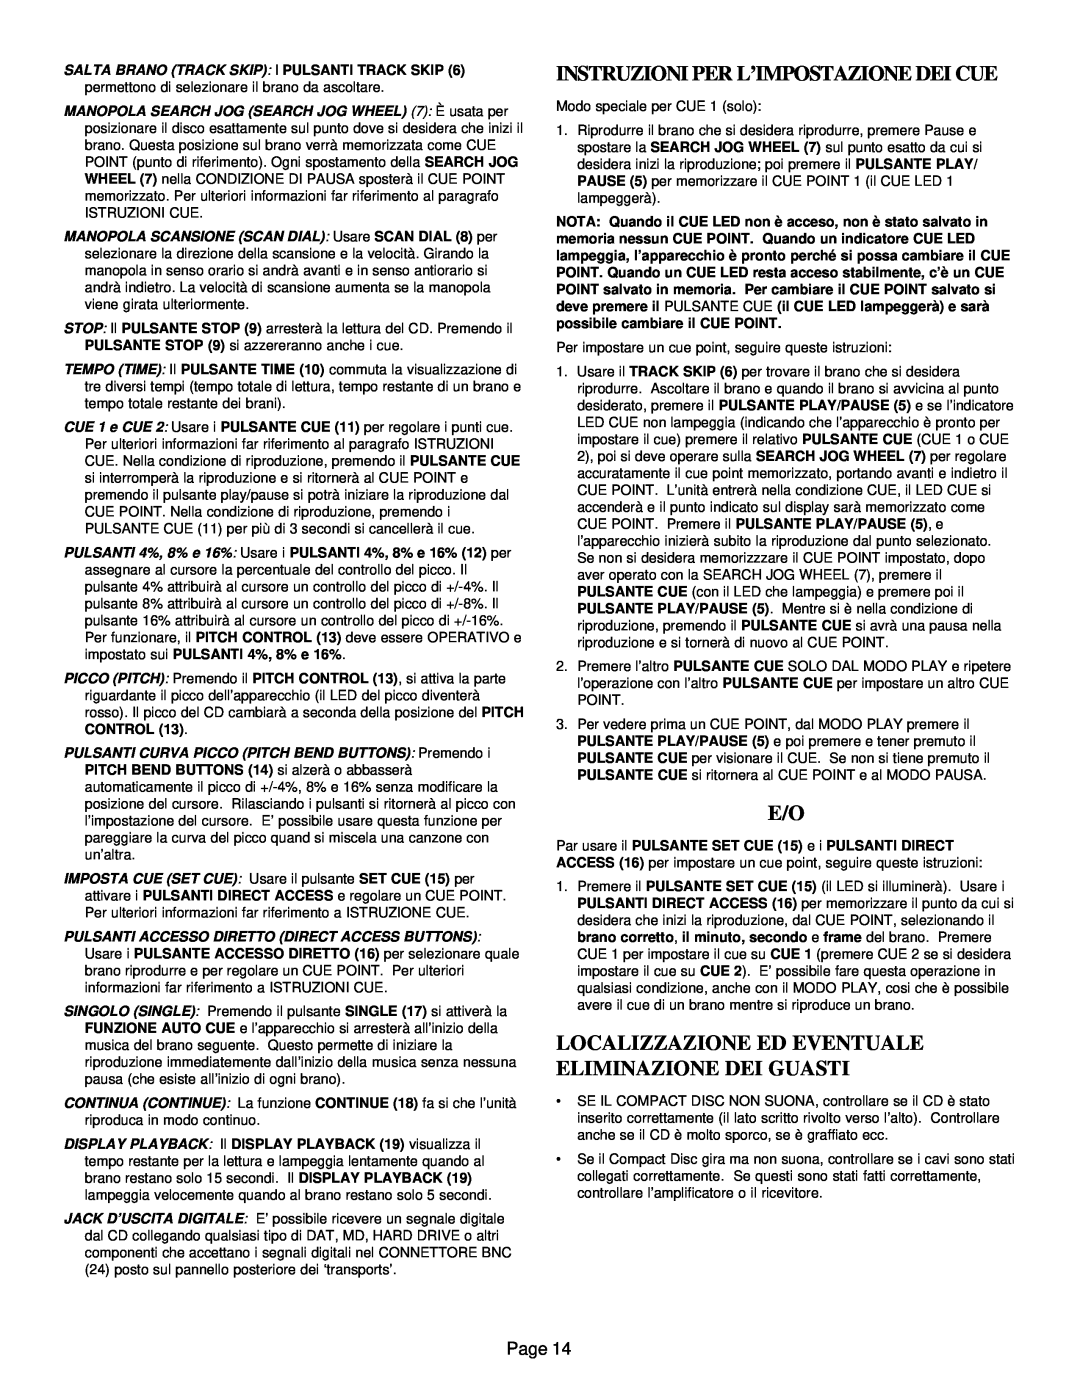 Gemini CD-9800 manual Instruzioni Per L’Impostazione Dei Cue, Page 